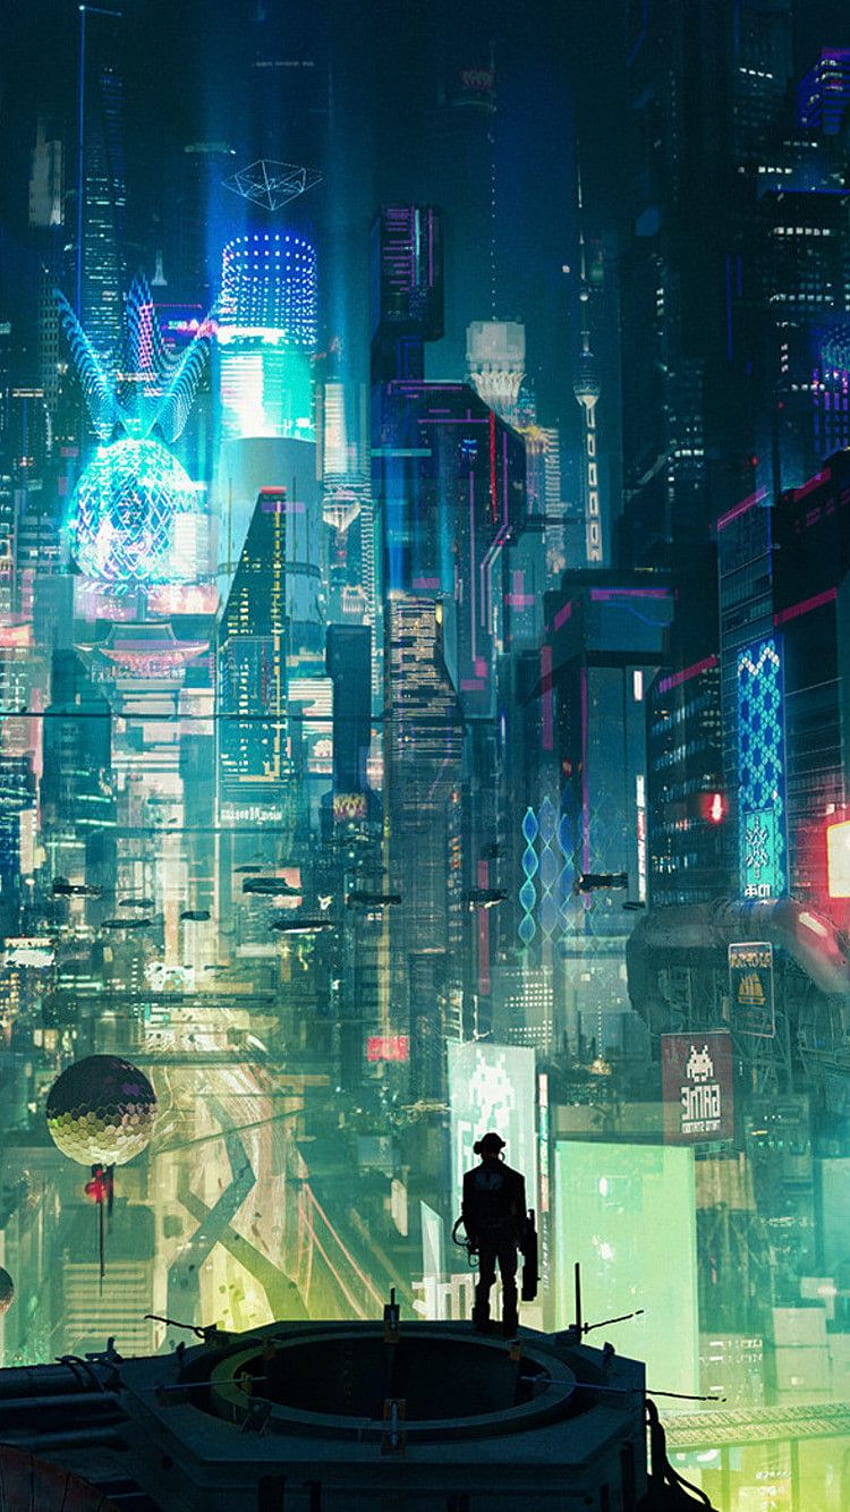 Thành phố cyberpunk là một thế giới đầy sức mạnh, năng động và sáng tạo. Những tòa nhà, đèn neon và những siêu xe mạnh mẽ tựa như đang chờ đón những người phiêu lưu tới khám phá. Hãy cùng đắm mình vào không gian tuyệt vời này qua hình ảnh liên quan.